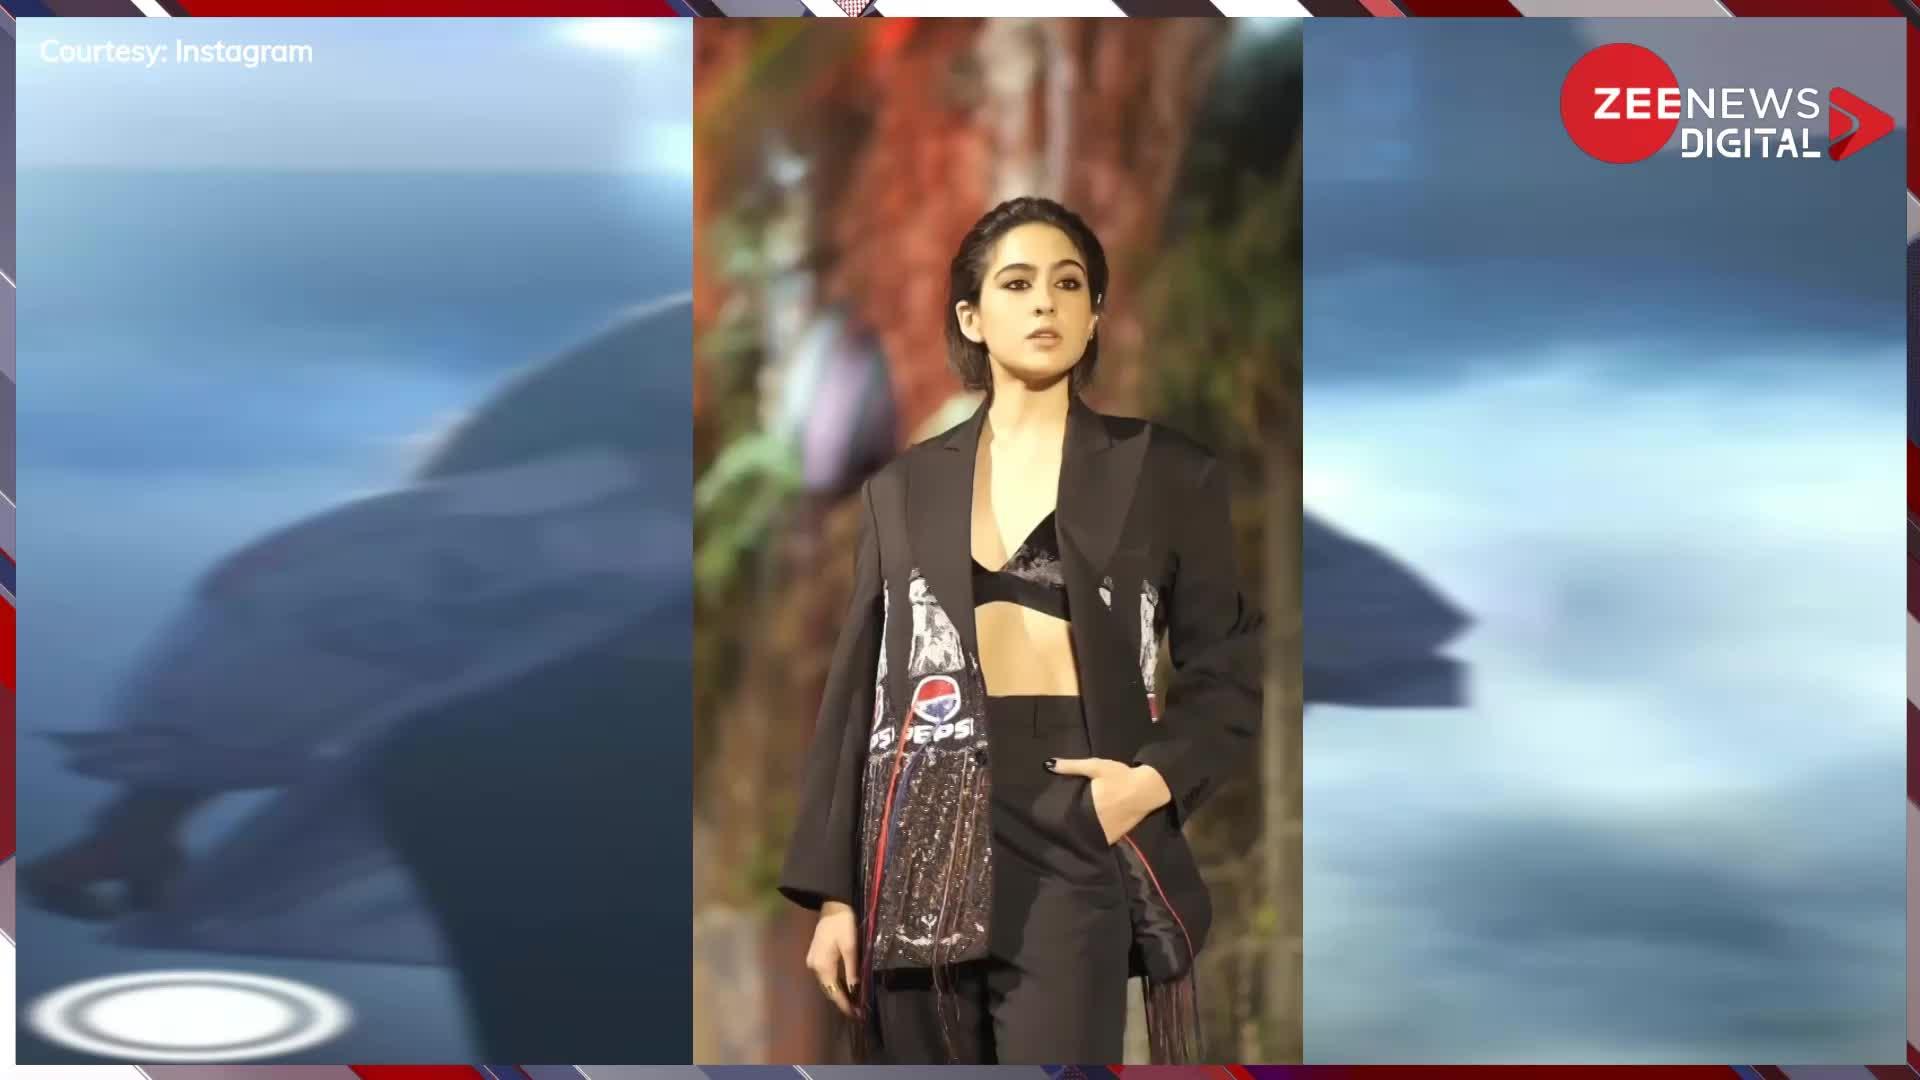 Sara Ali khan पर चढ़ा बोल्डनेस का खुमार, शर्ट के बटन खोल ब्लैक ब्रा में किया सेक्सी फिगर फ्लॉन्ट